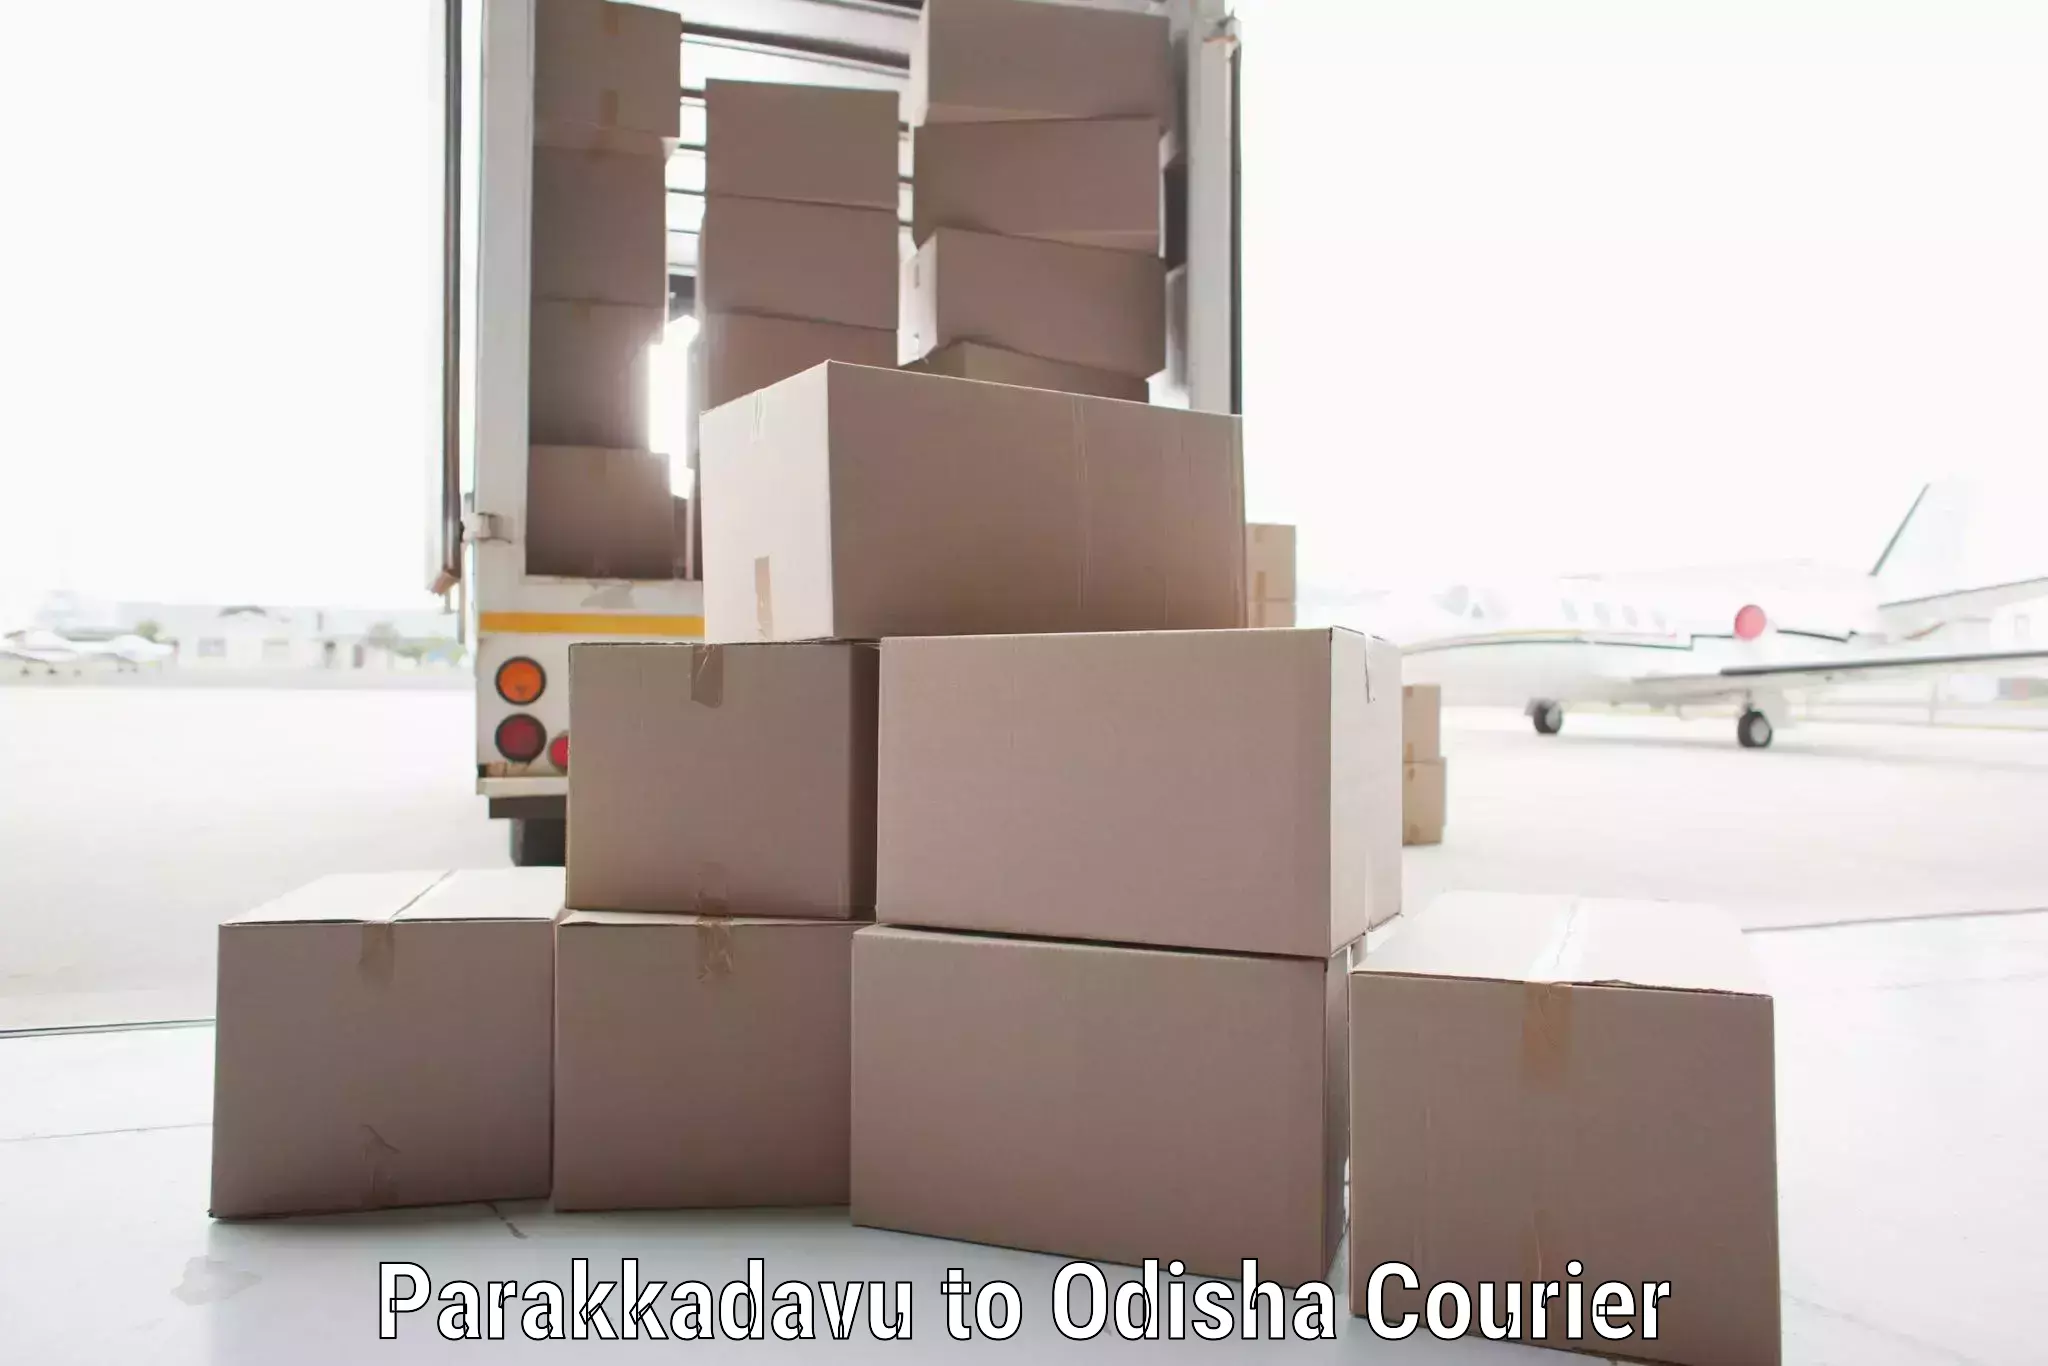 Personal courier services Parakkadavu to Odisha